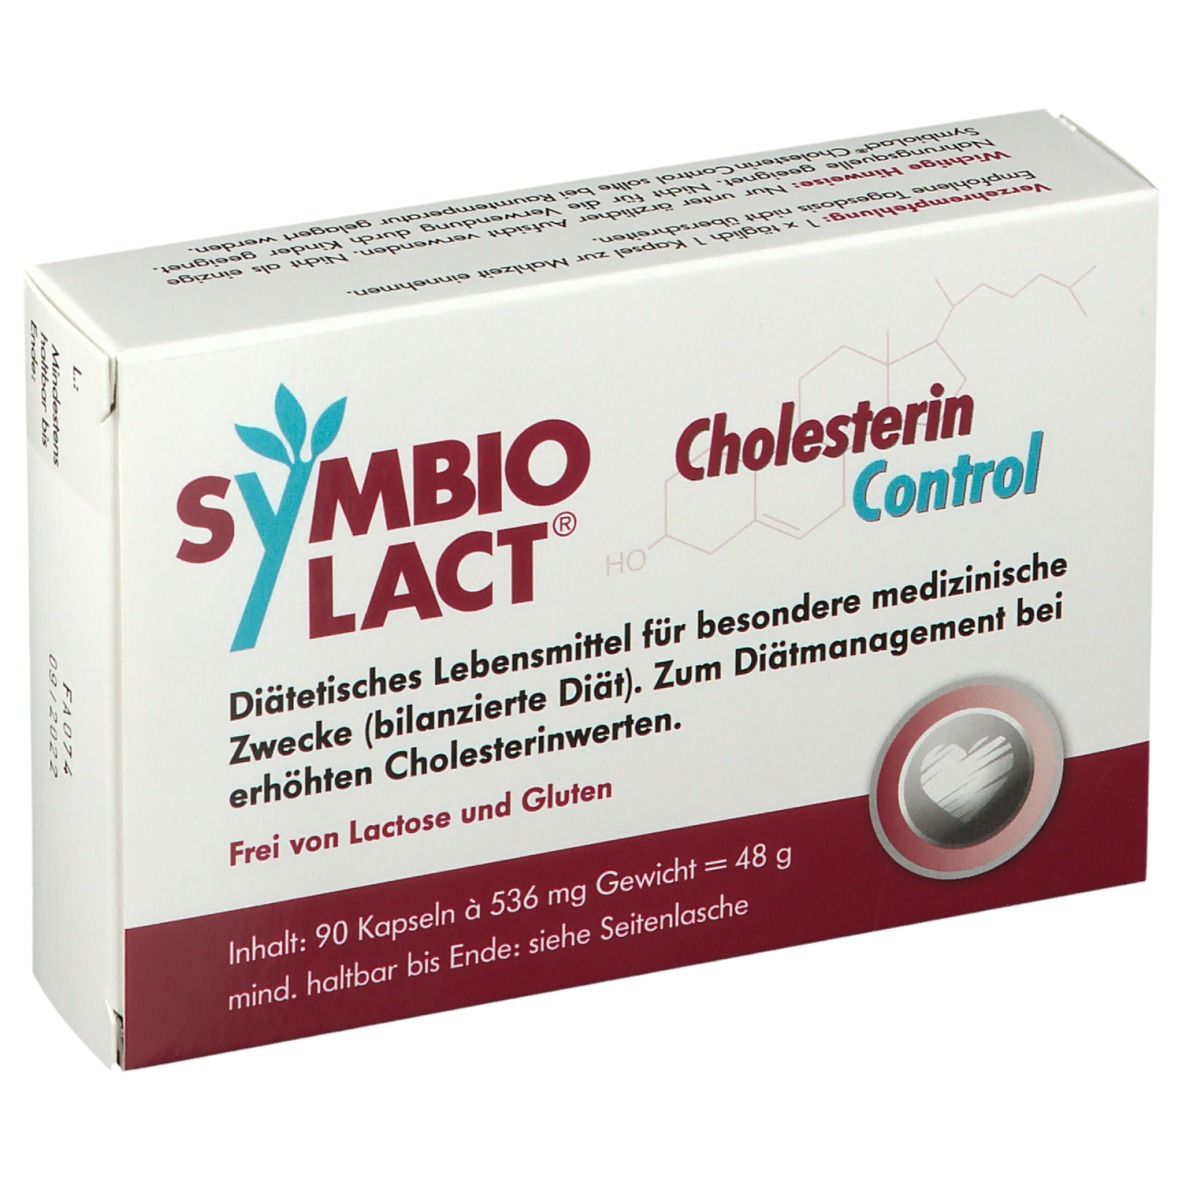 SYMBIO LACT® Cholesterin Control